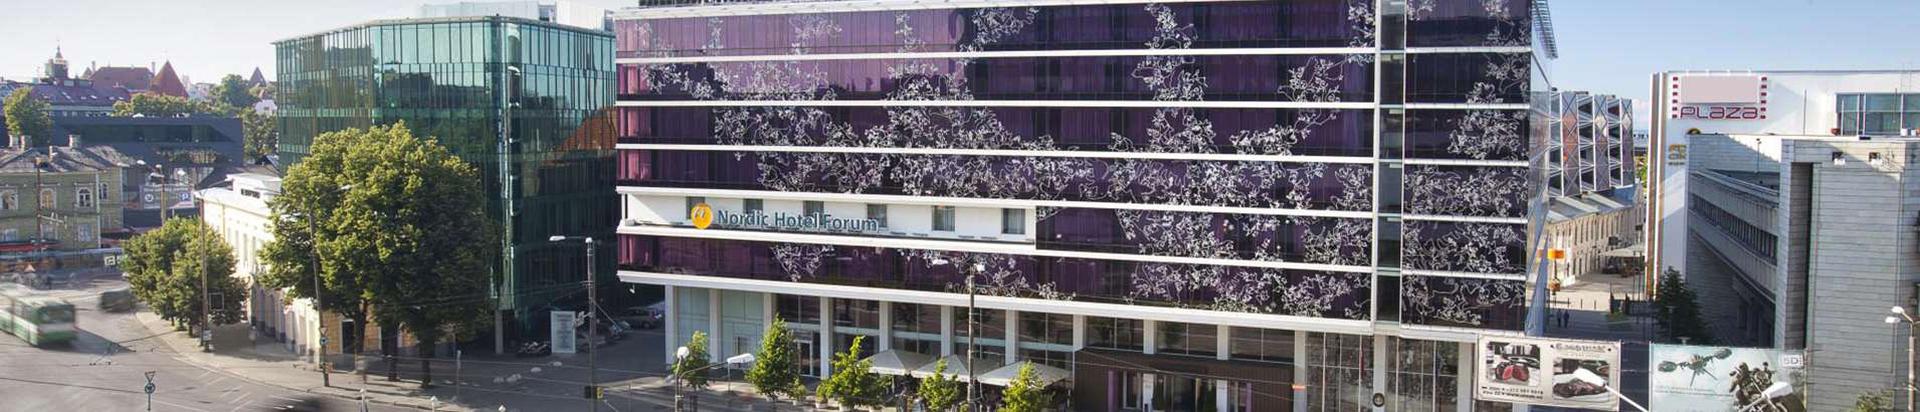 Suurim mainega ettevõte NORDIC HOTELS OÜ, maineskoor 11290, aktiivseid äriseoseid 3. Tegutseb peamiselt valdkonnas: Hotellid.